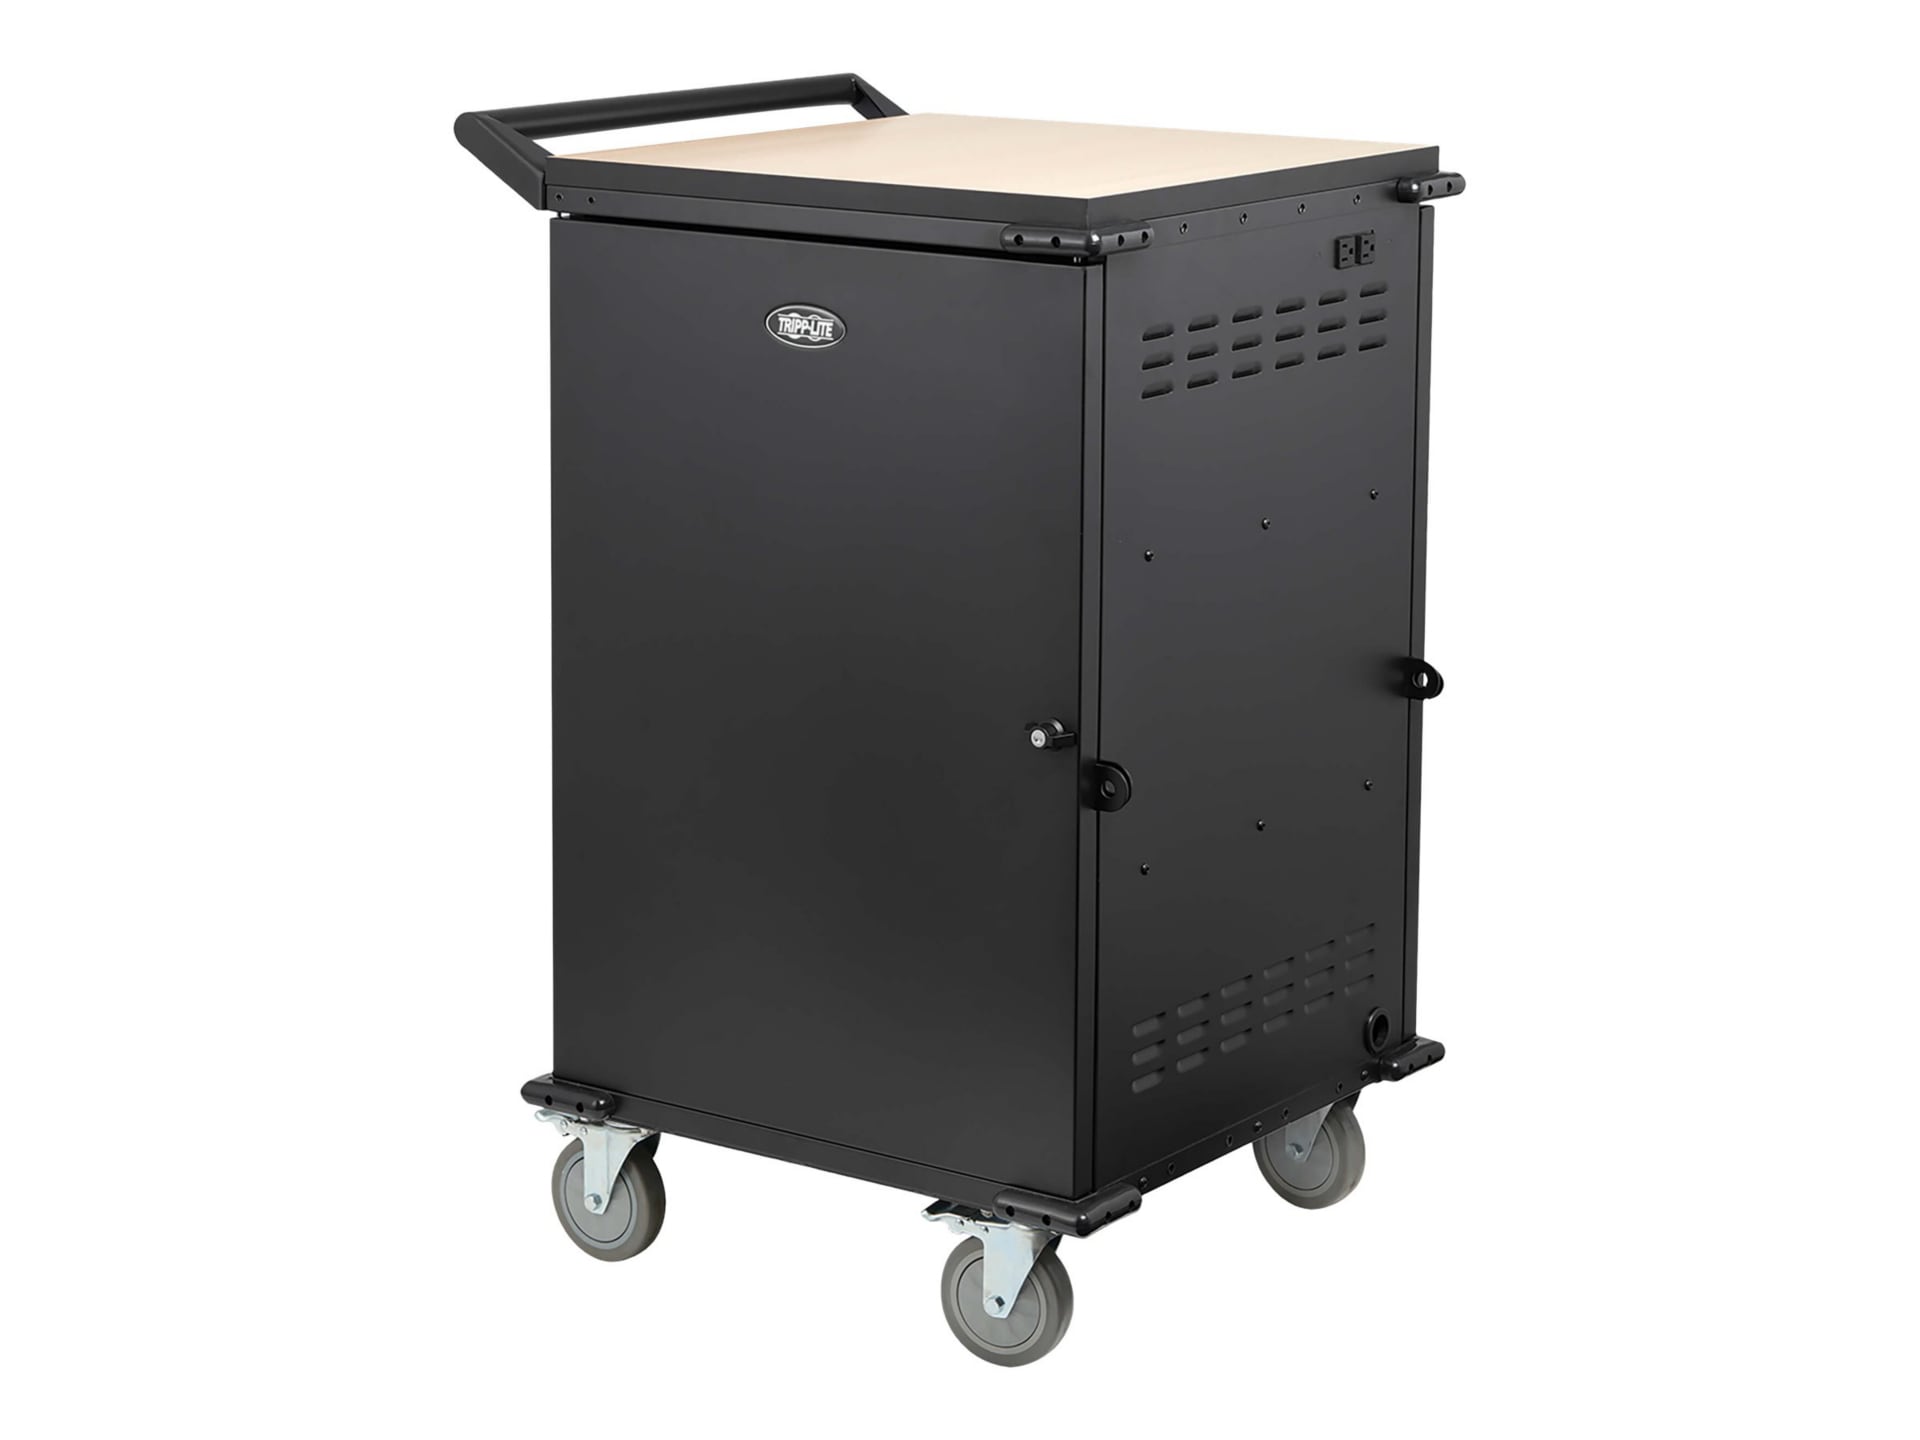 Tripp Lite Locking Storage Cart for Mobile Devices and AV Equipment - Black - cart - black